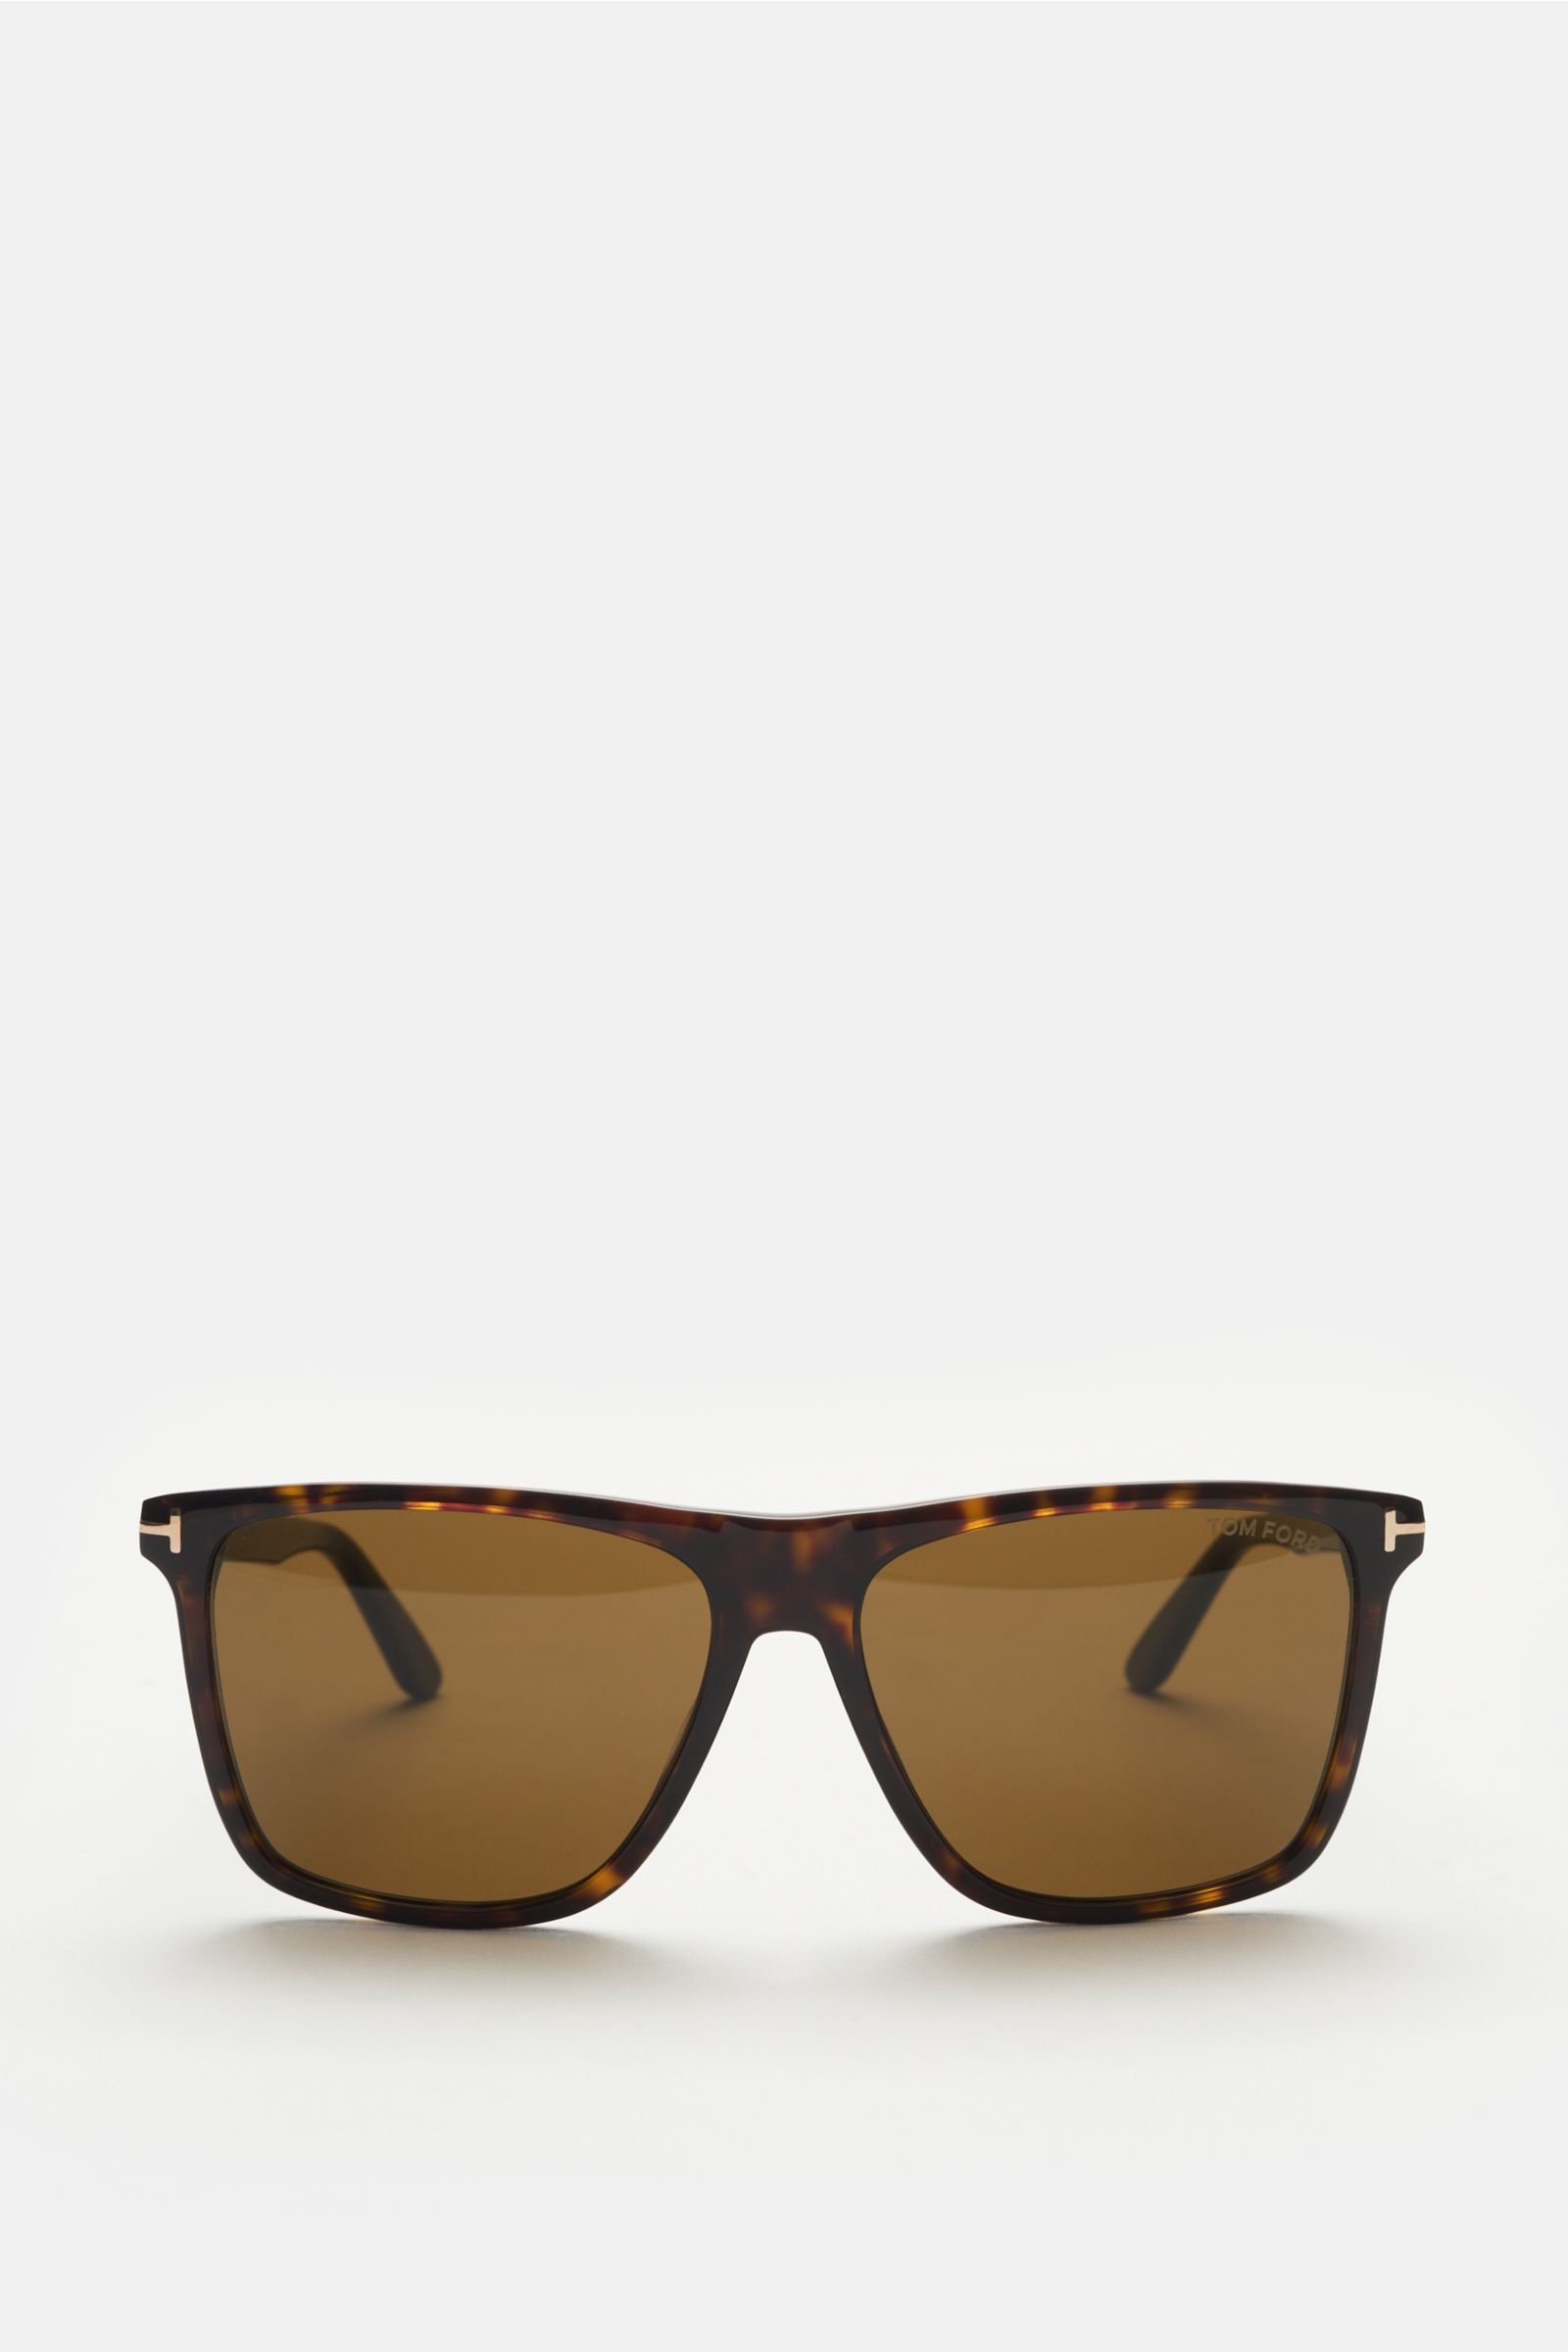 Sunglasses 'Fletcher' dark brown/anthracite